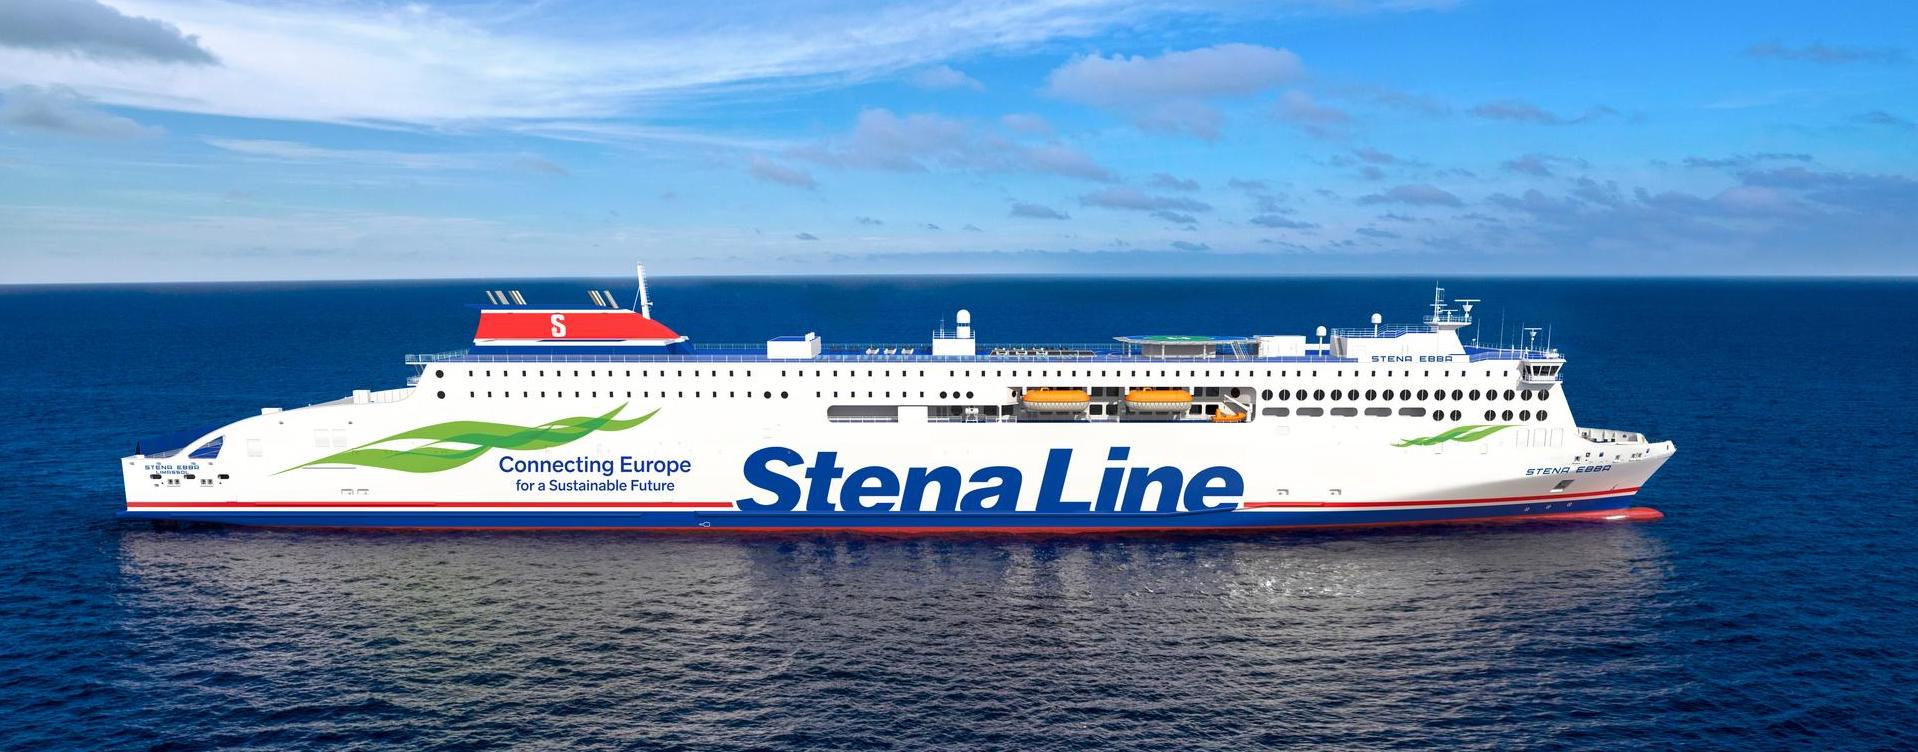 Photo of Stena Line - Stena Ebba ship